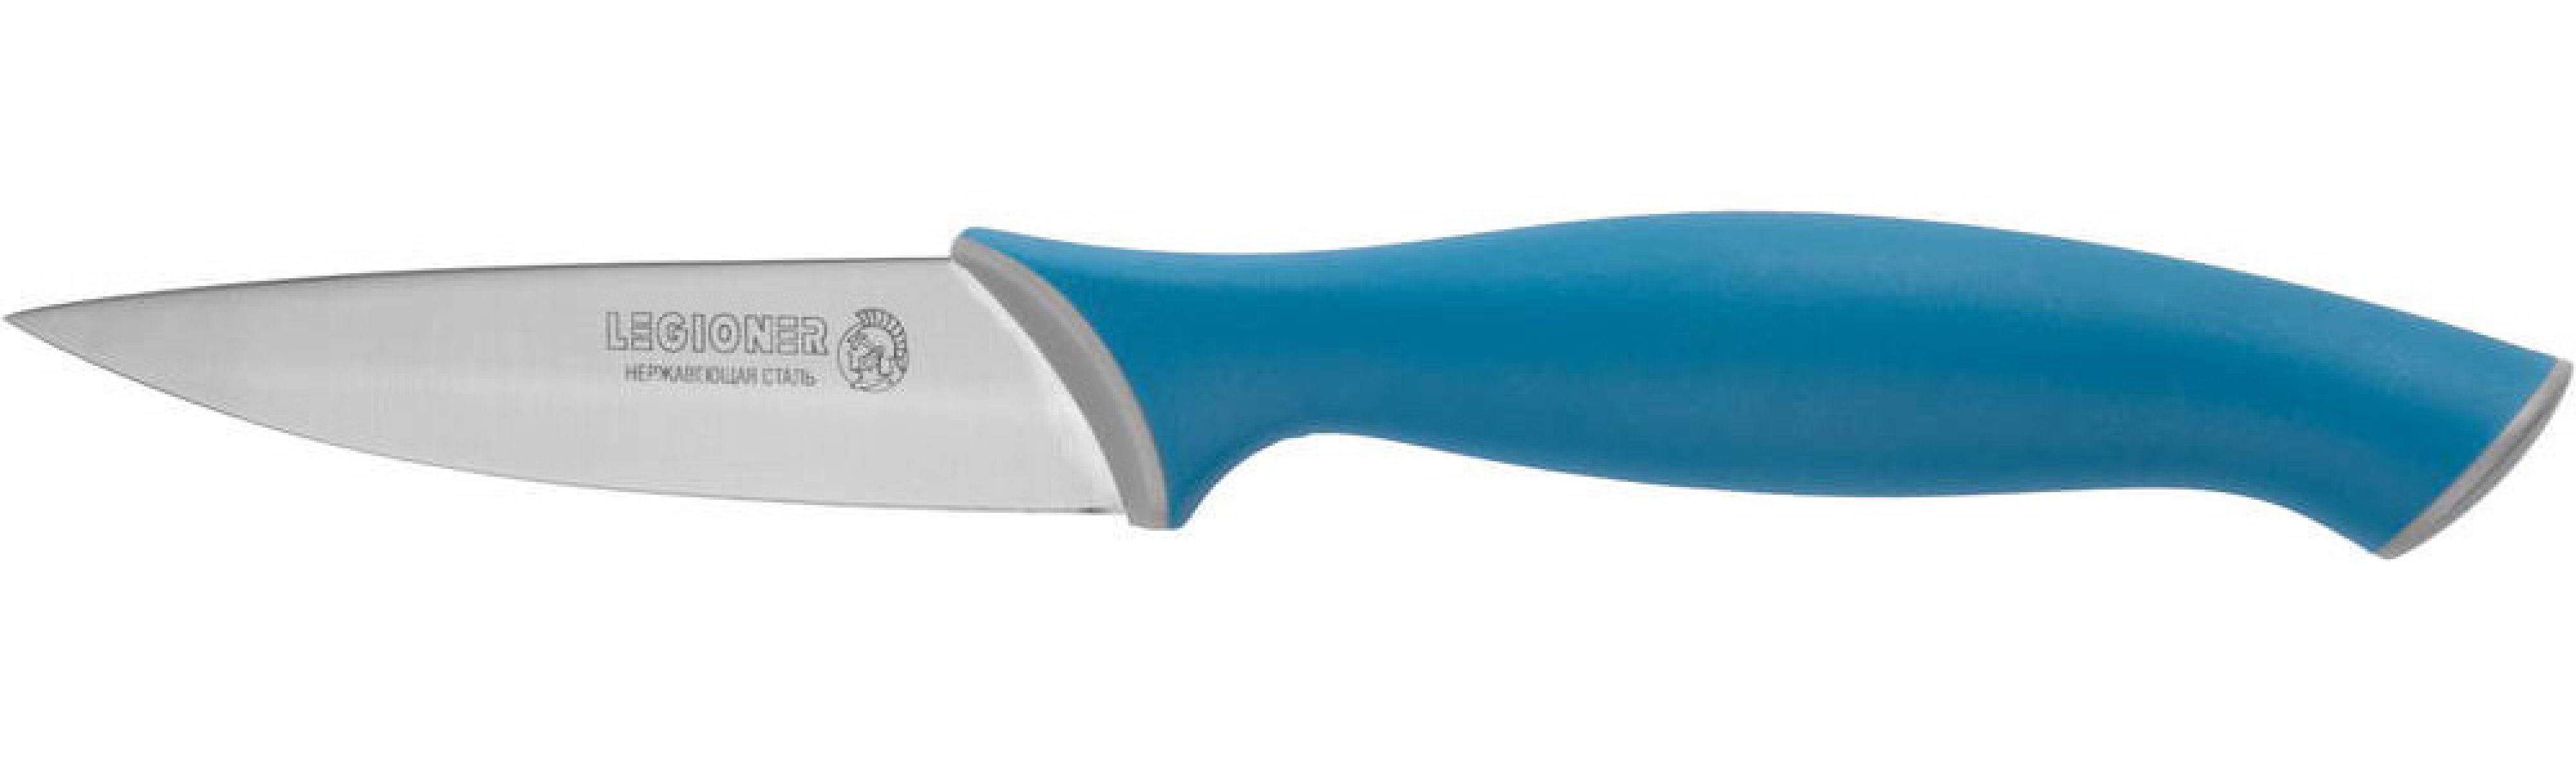 Овощной нож LEGIONER Italica 90 мм нержавеющее лезвие эргономичная рукоятка (47965)